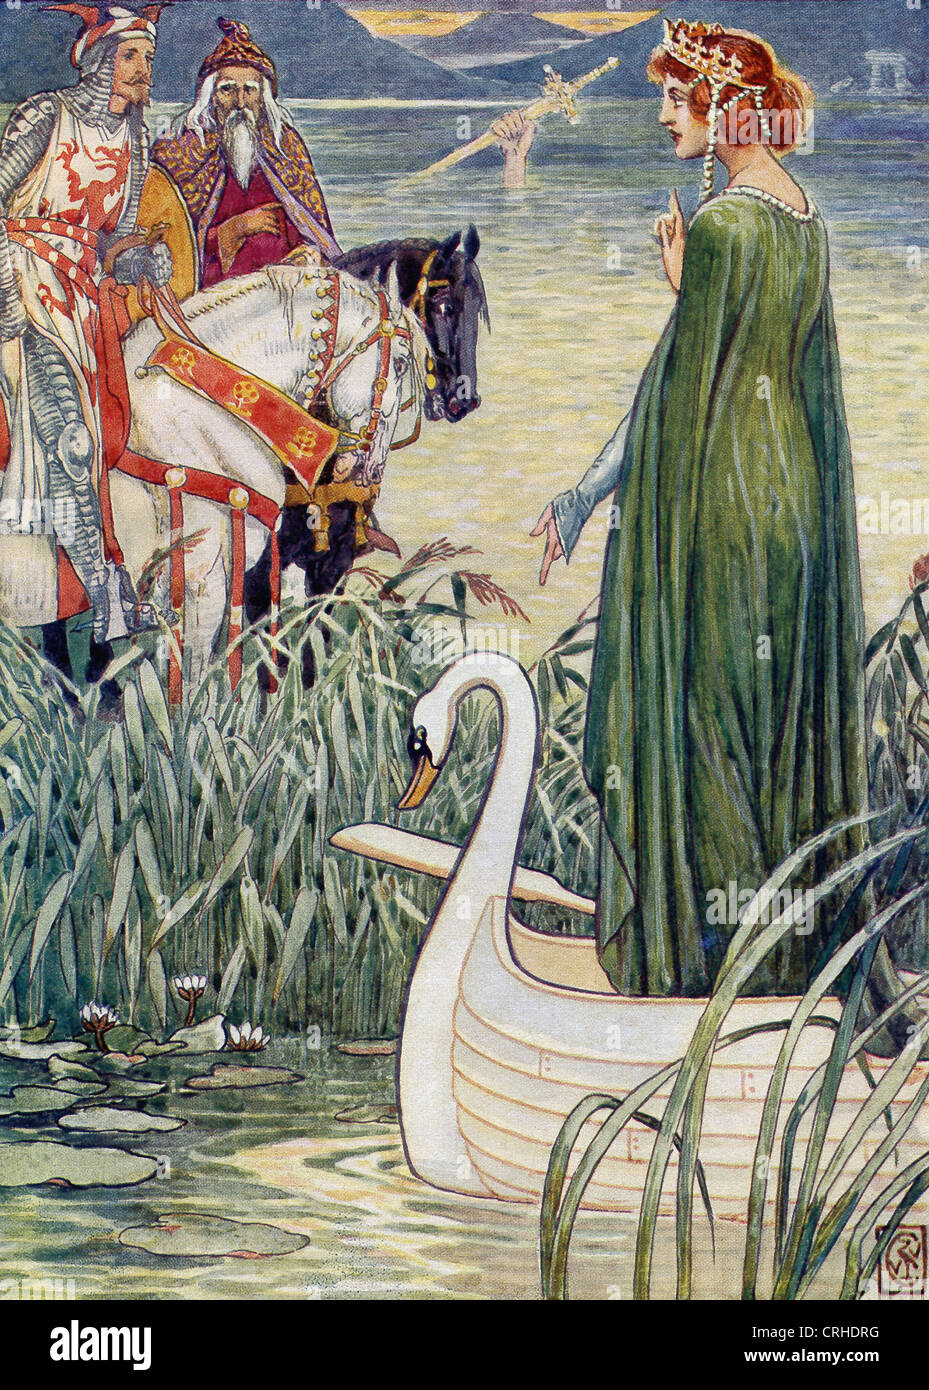 Leggenda arturiana centri su Re Artù di Bretagna. La sua spada, noto come Excalibur, a lui fu data dalla signora del lago. Foto Stock